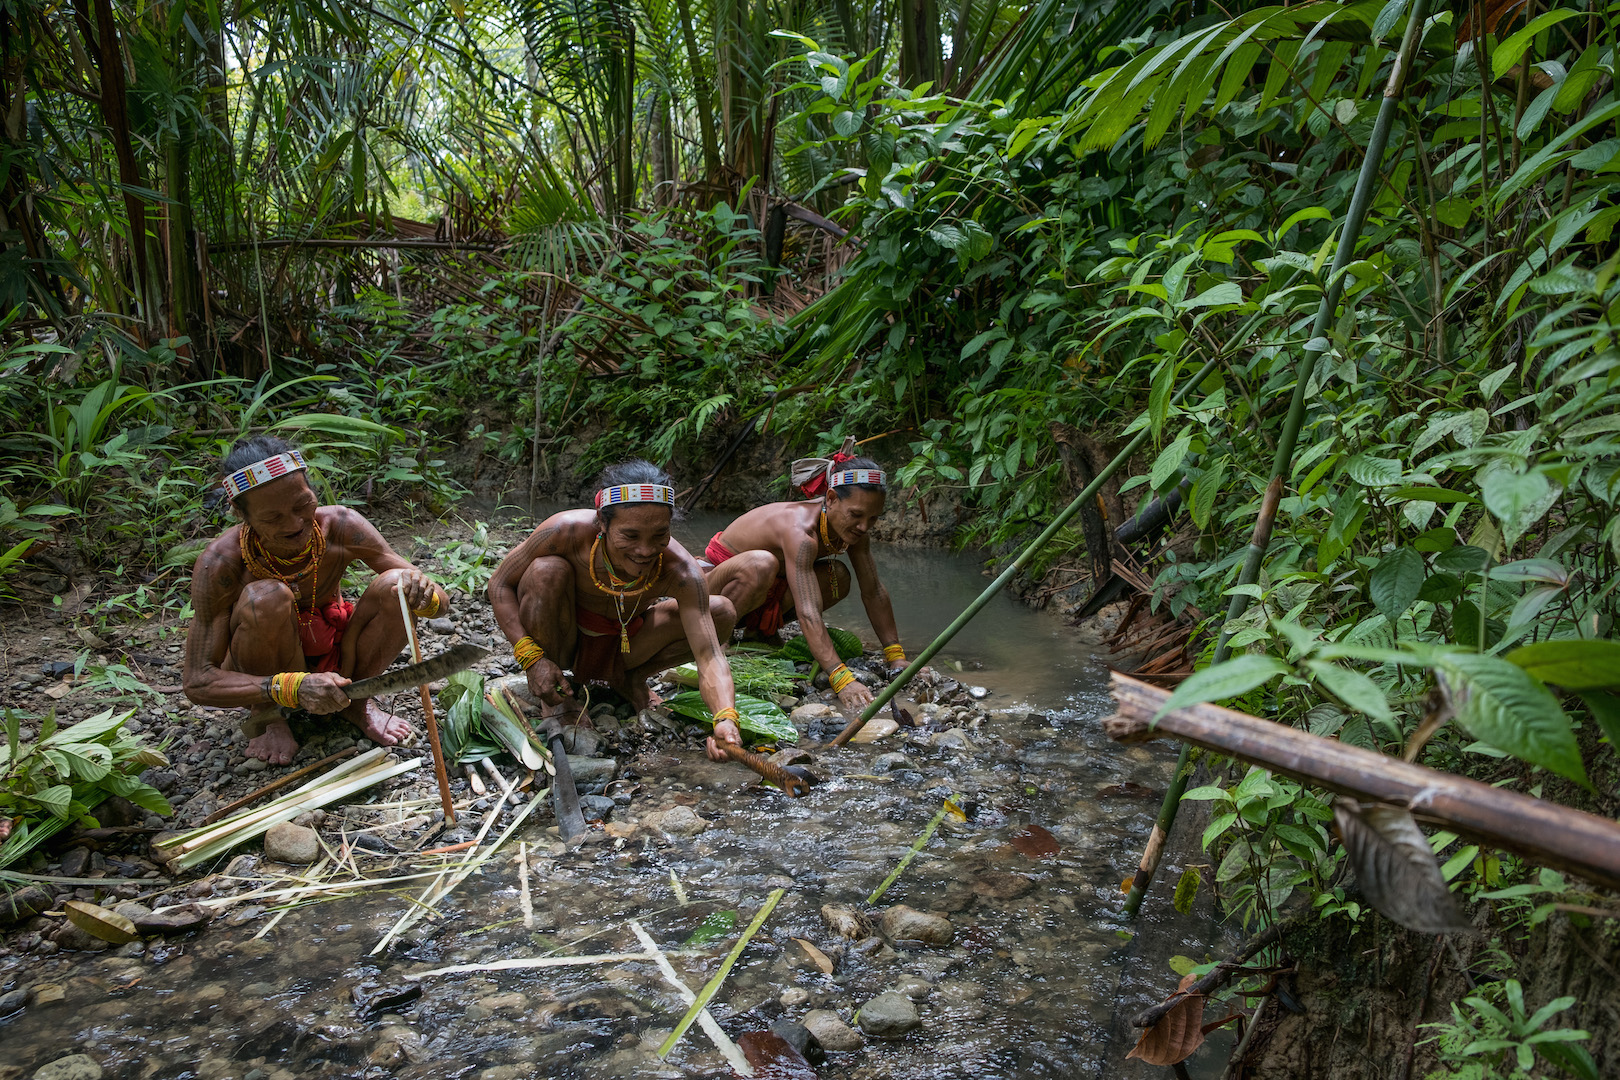 Chamanes d'une tribu indigène des îles Mentawai en Indonésie, les Sikereis prennent de l'eau de rivière pour fabriquer les médicaments aux plantes pour leurs patients. (Copyright : Danishwara Nathaniel, 2017)